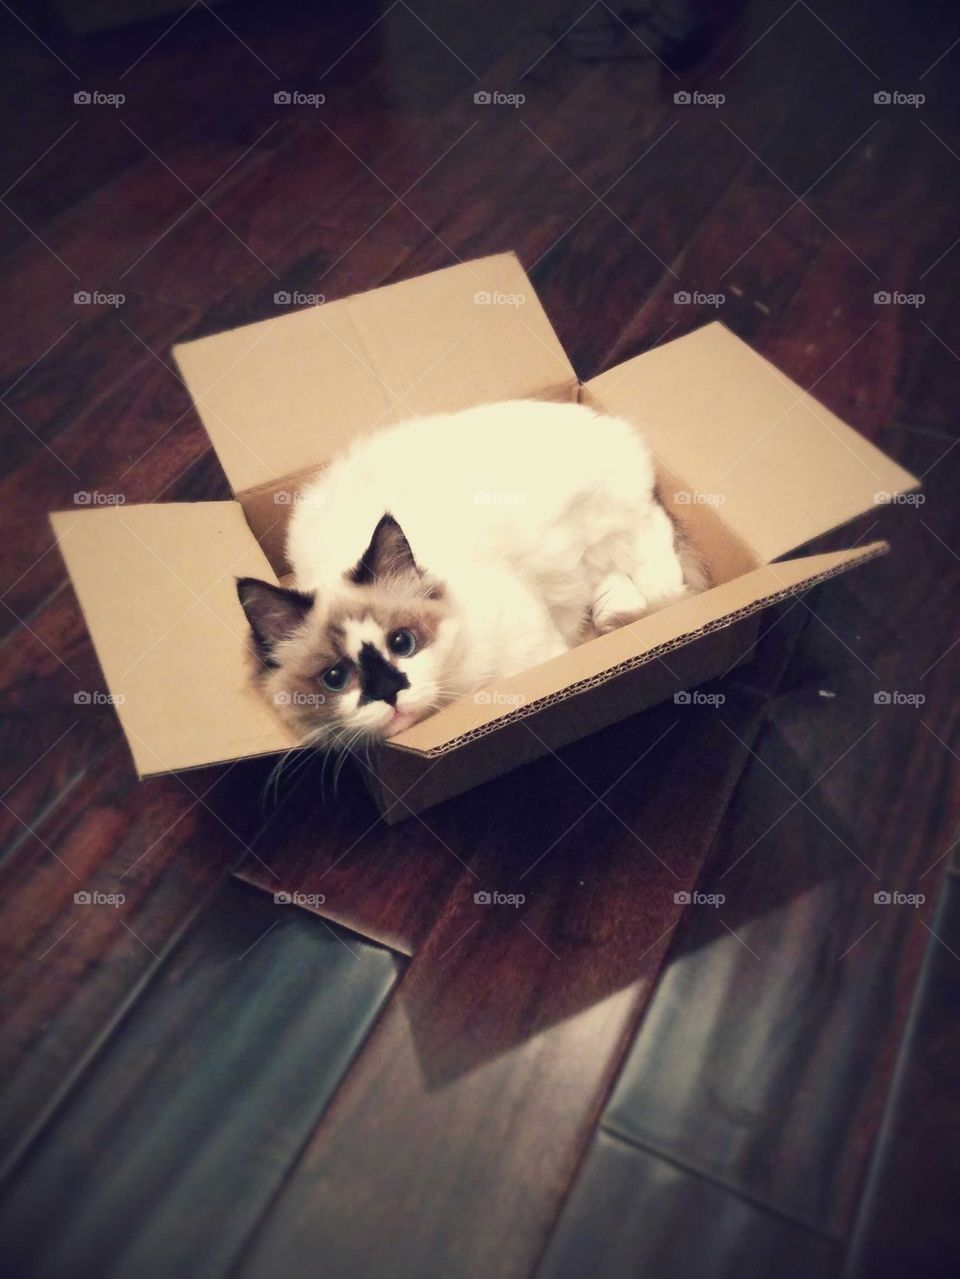 Albert in a box.